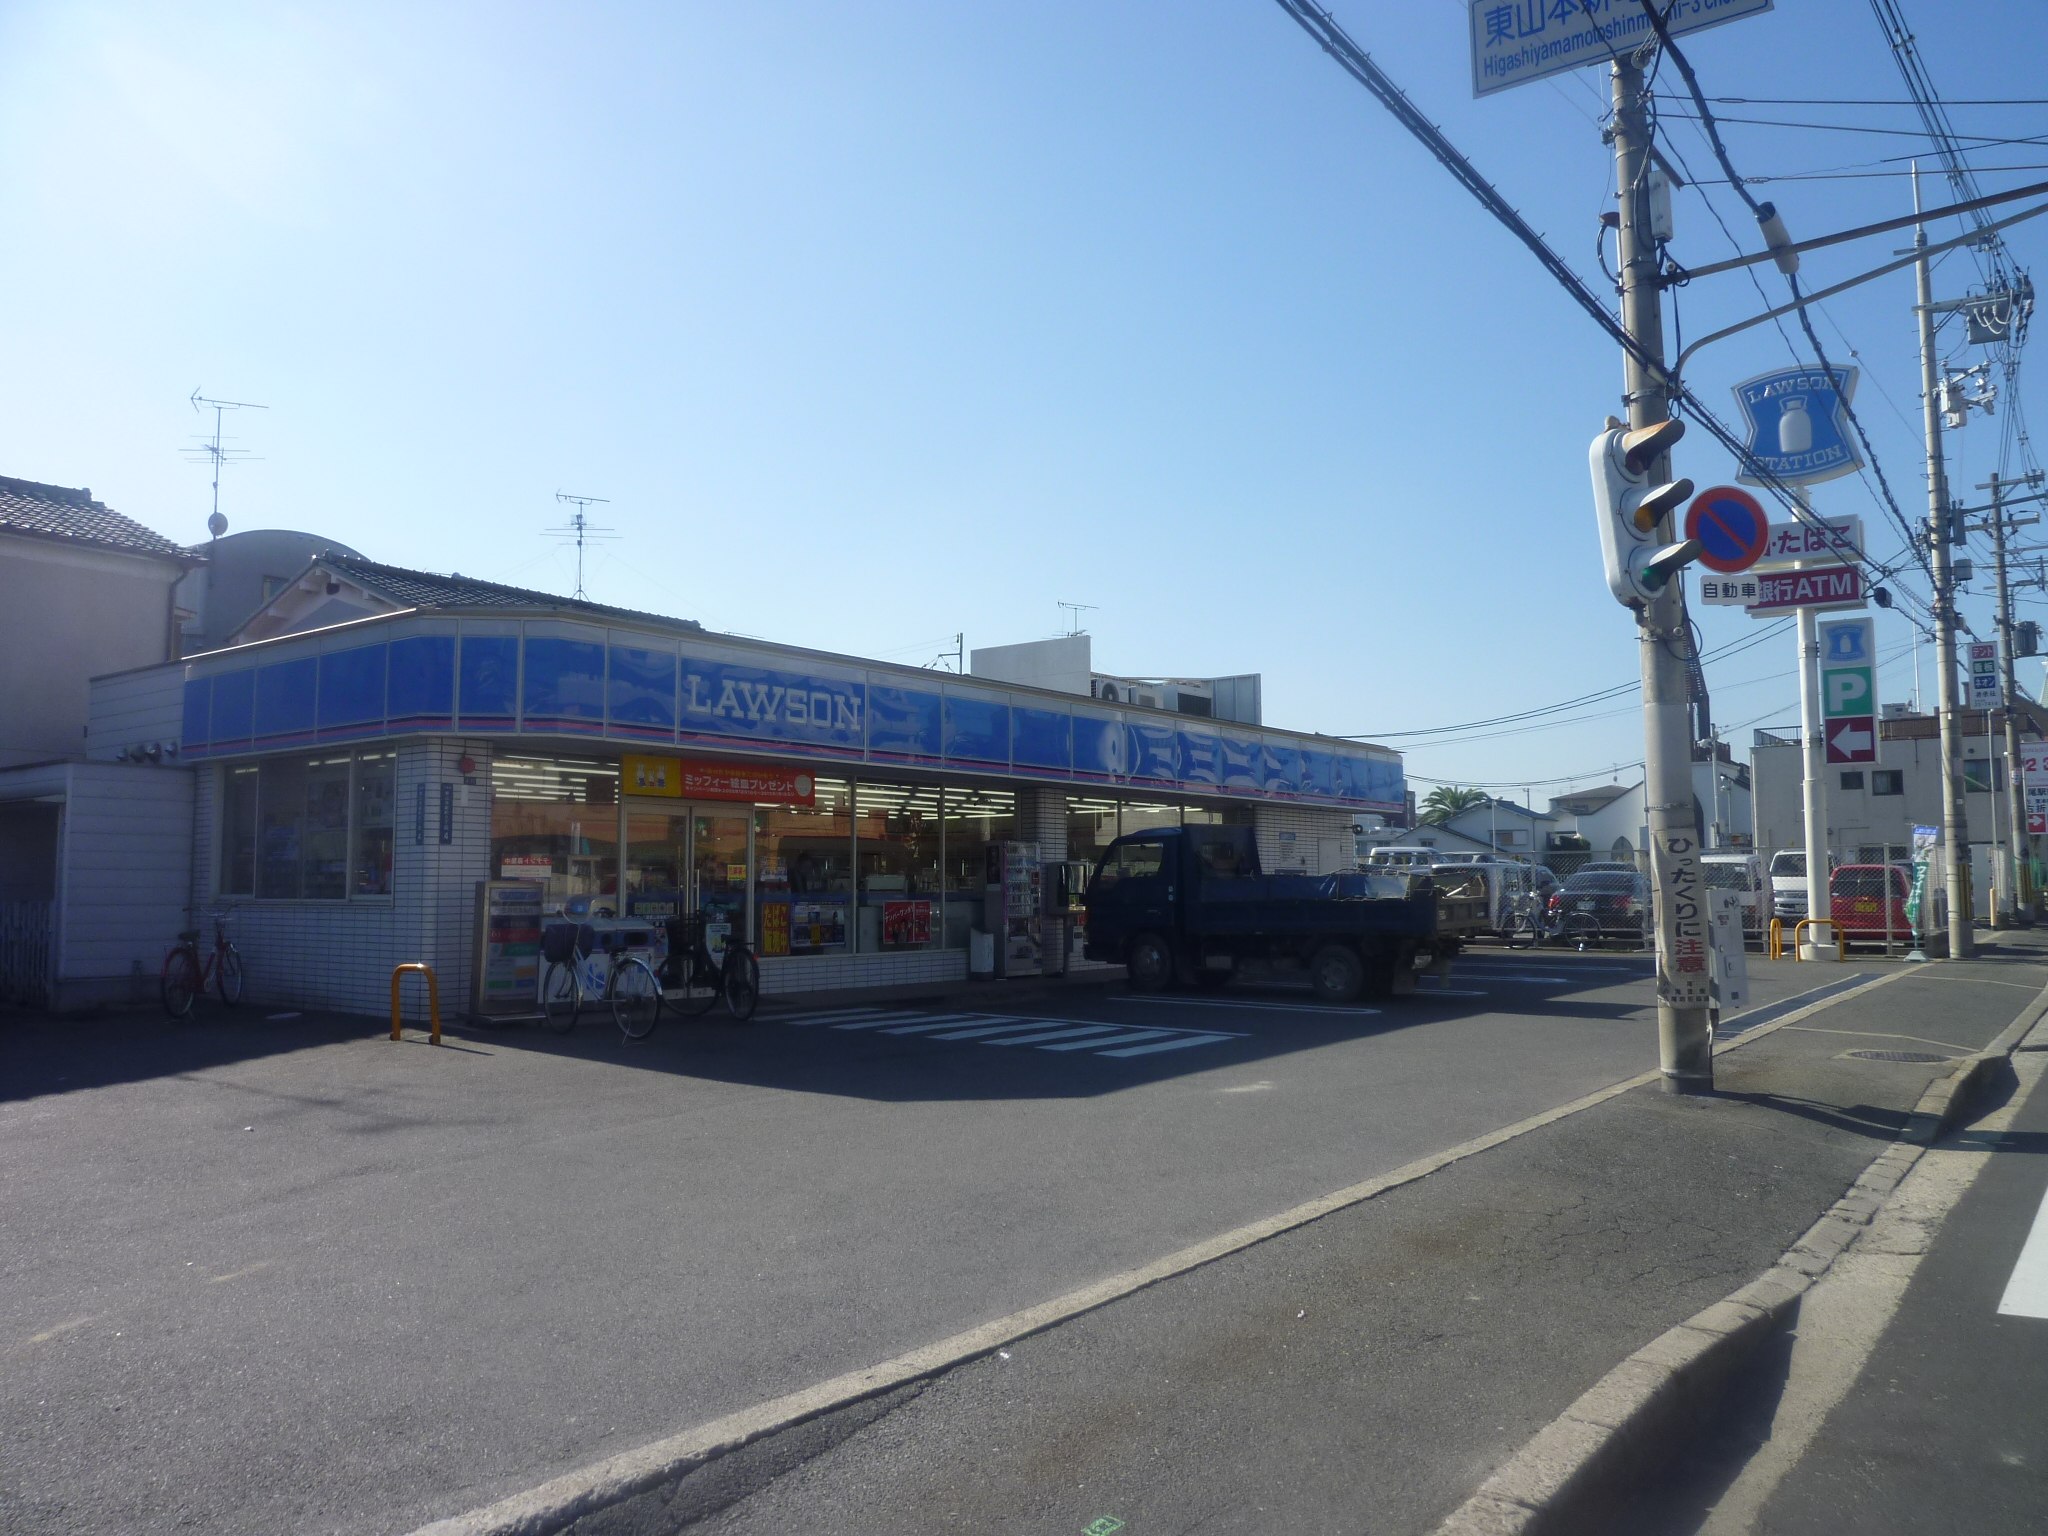 Convenience store. Lawson Yao Higashiyamamotoshin-cho 3-chome up (convenience store) 556m